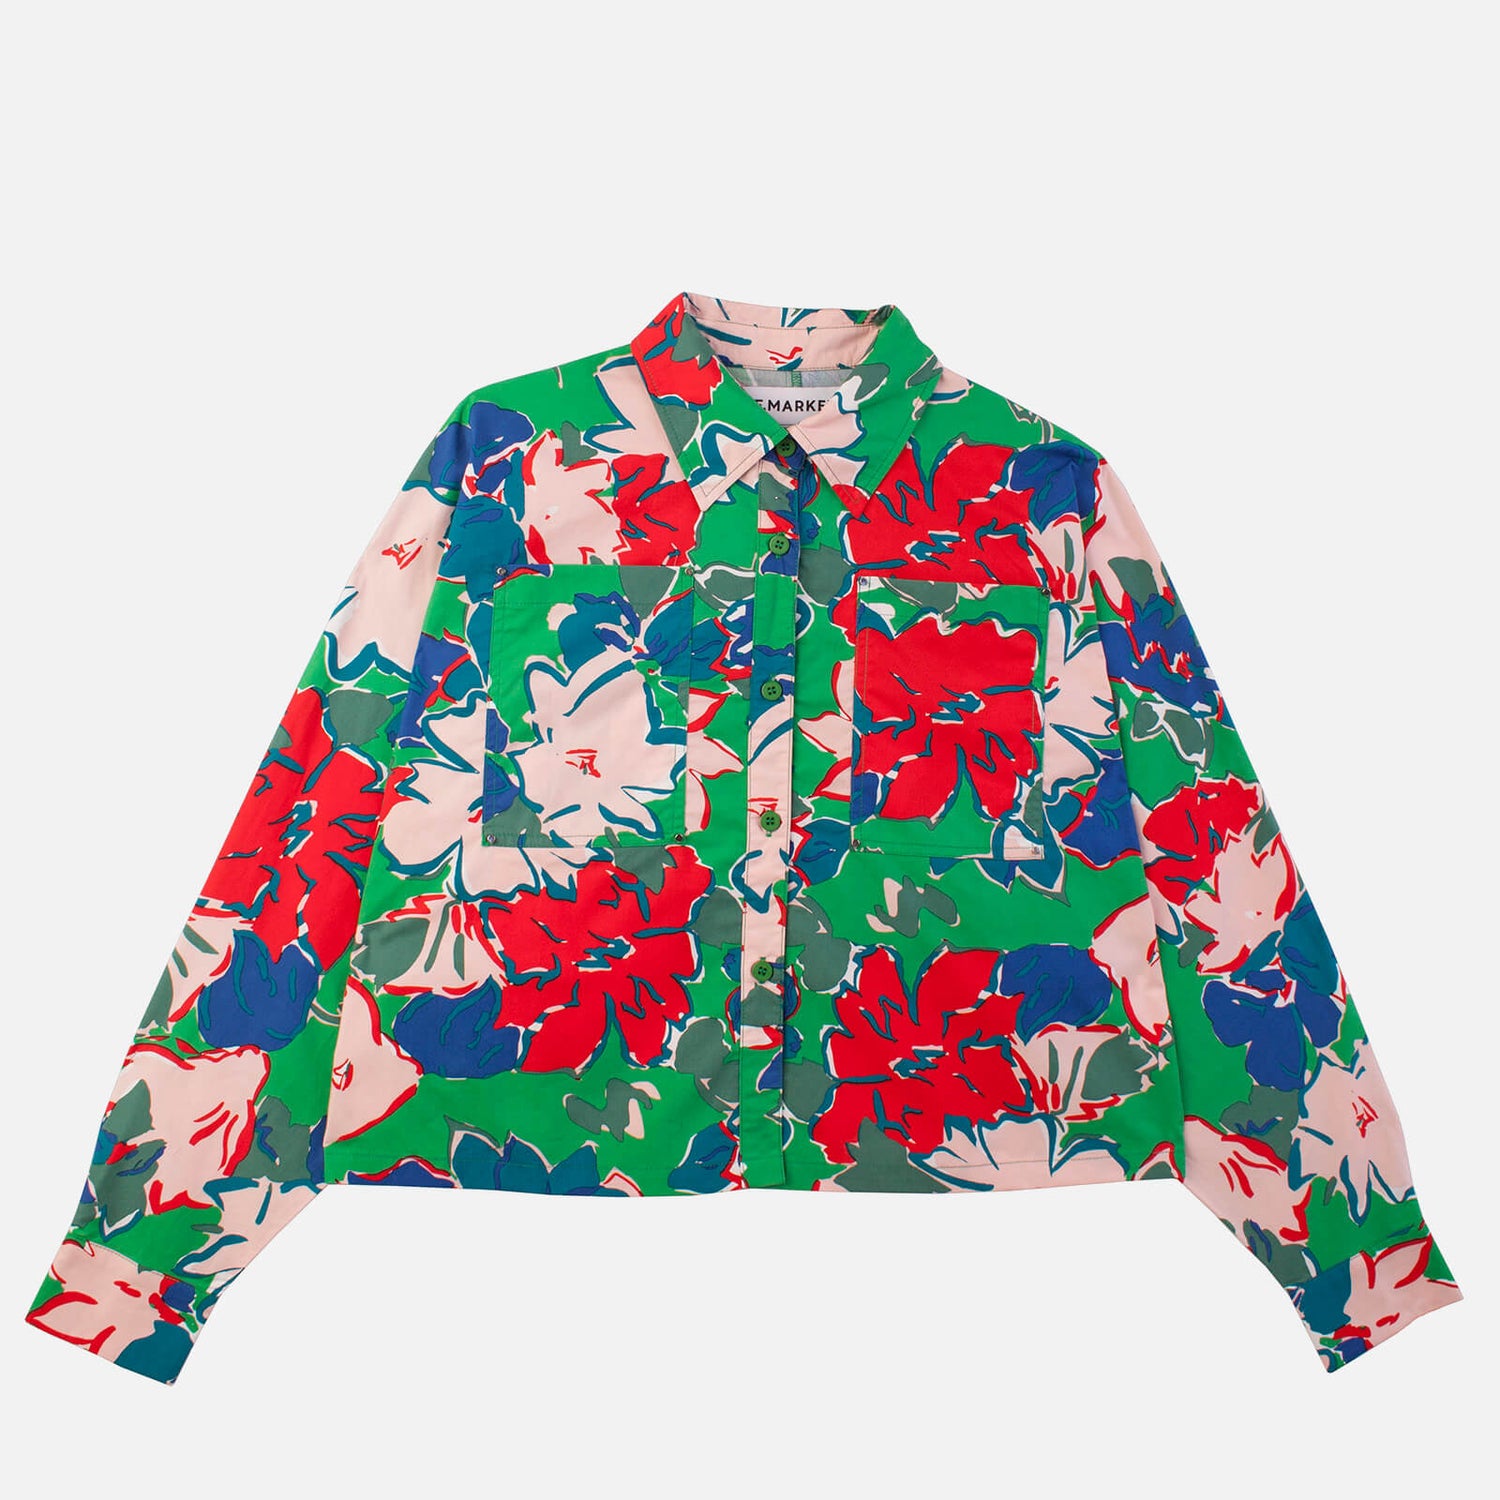 L.F Markey Women's Lennox Shirt - Lyon Floral - UK 6